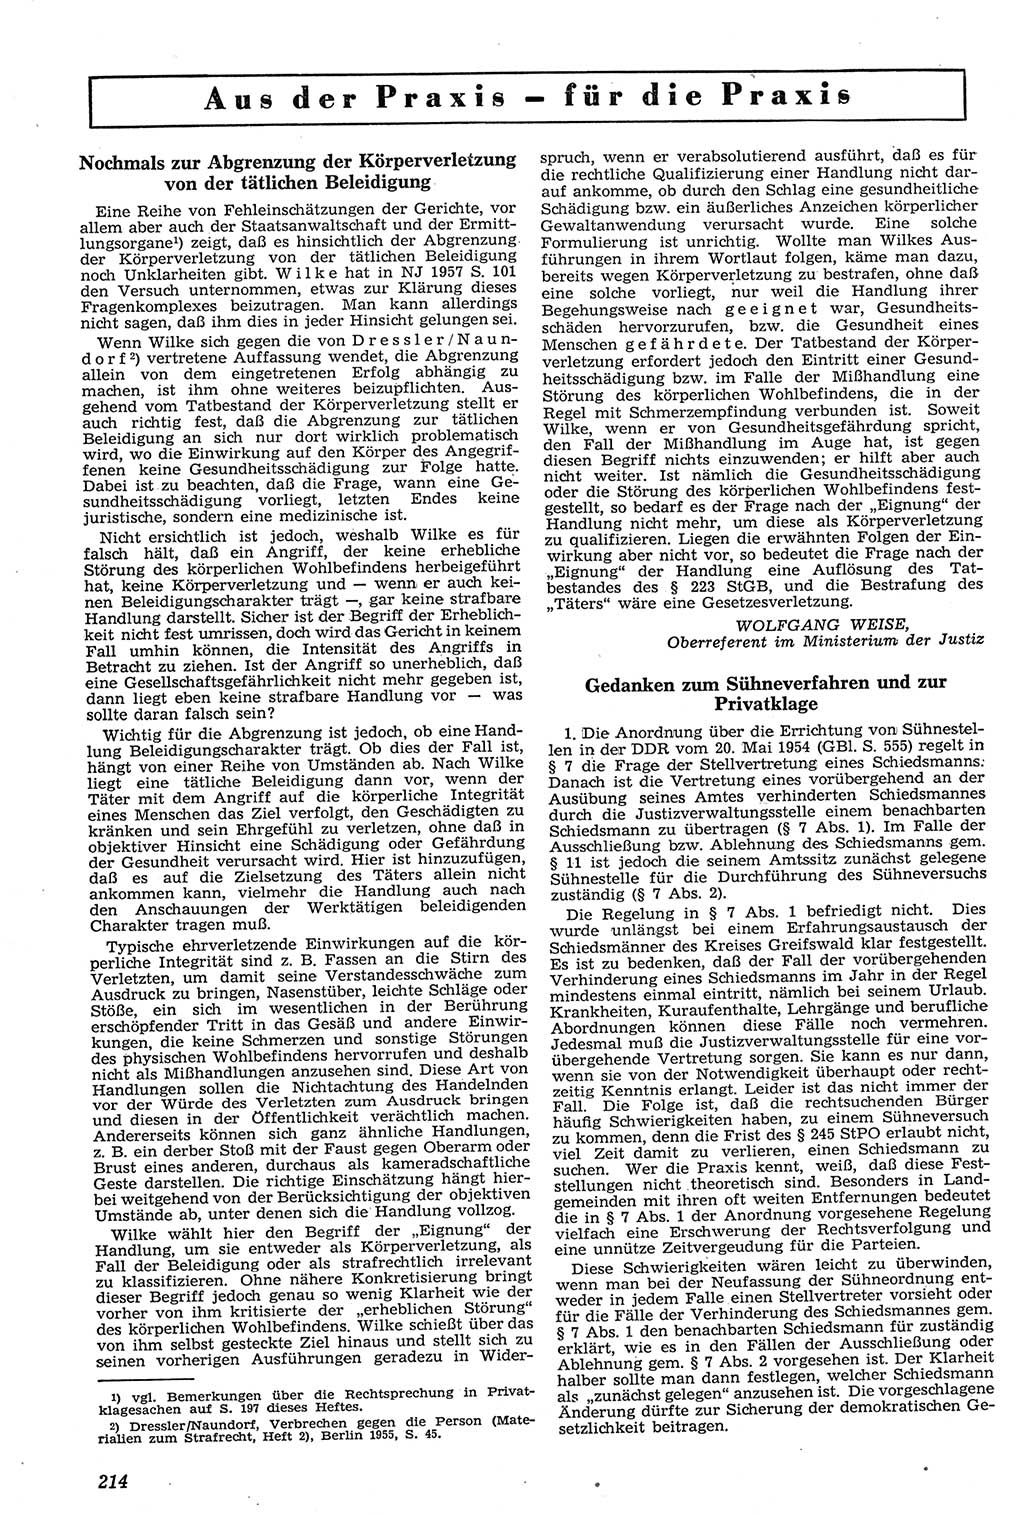 Neue Justiz (NJ), Zeitschrift für Recht und Rechtswissenschaft [Deutsche Demokratische Republik (DDR)], 11. Jahrgang 1957, Seite 214 (NJ DDR 1957, S. 214)